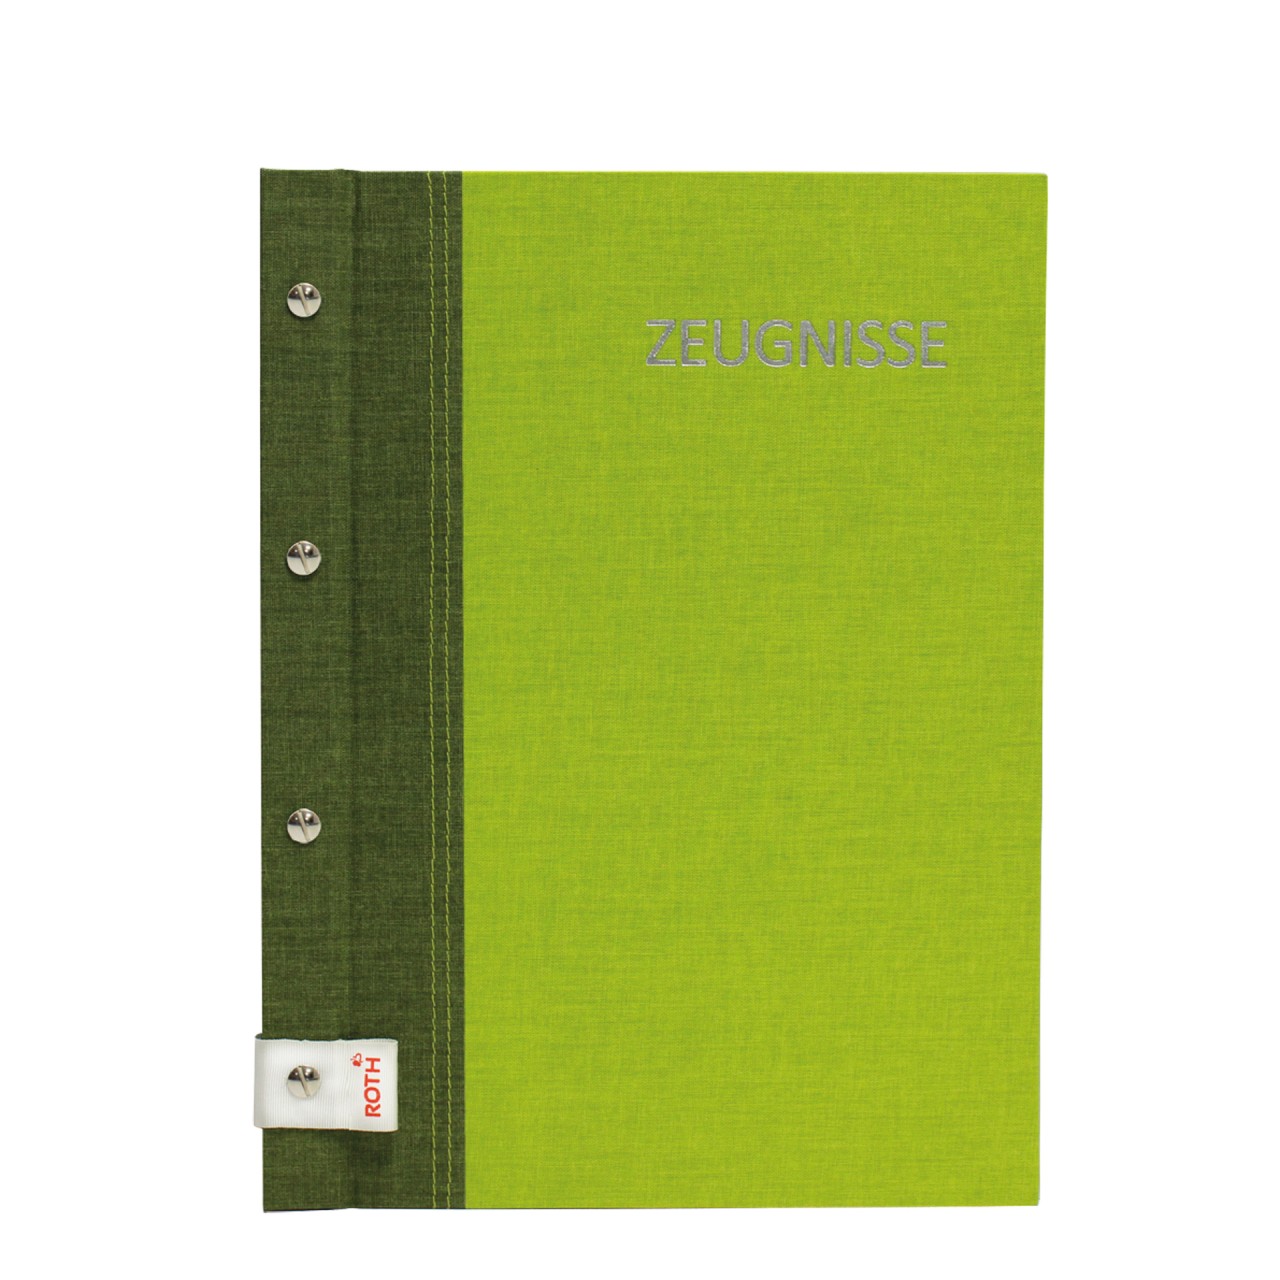 Zeugnismappe Bicolor Olive-Green von Roth GmbH